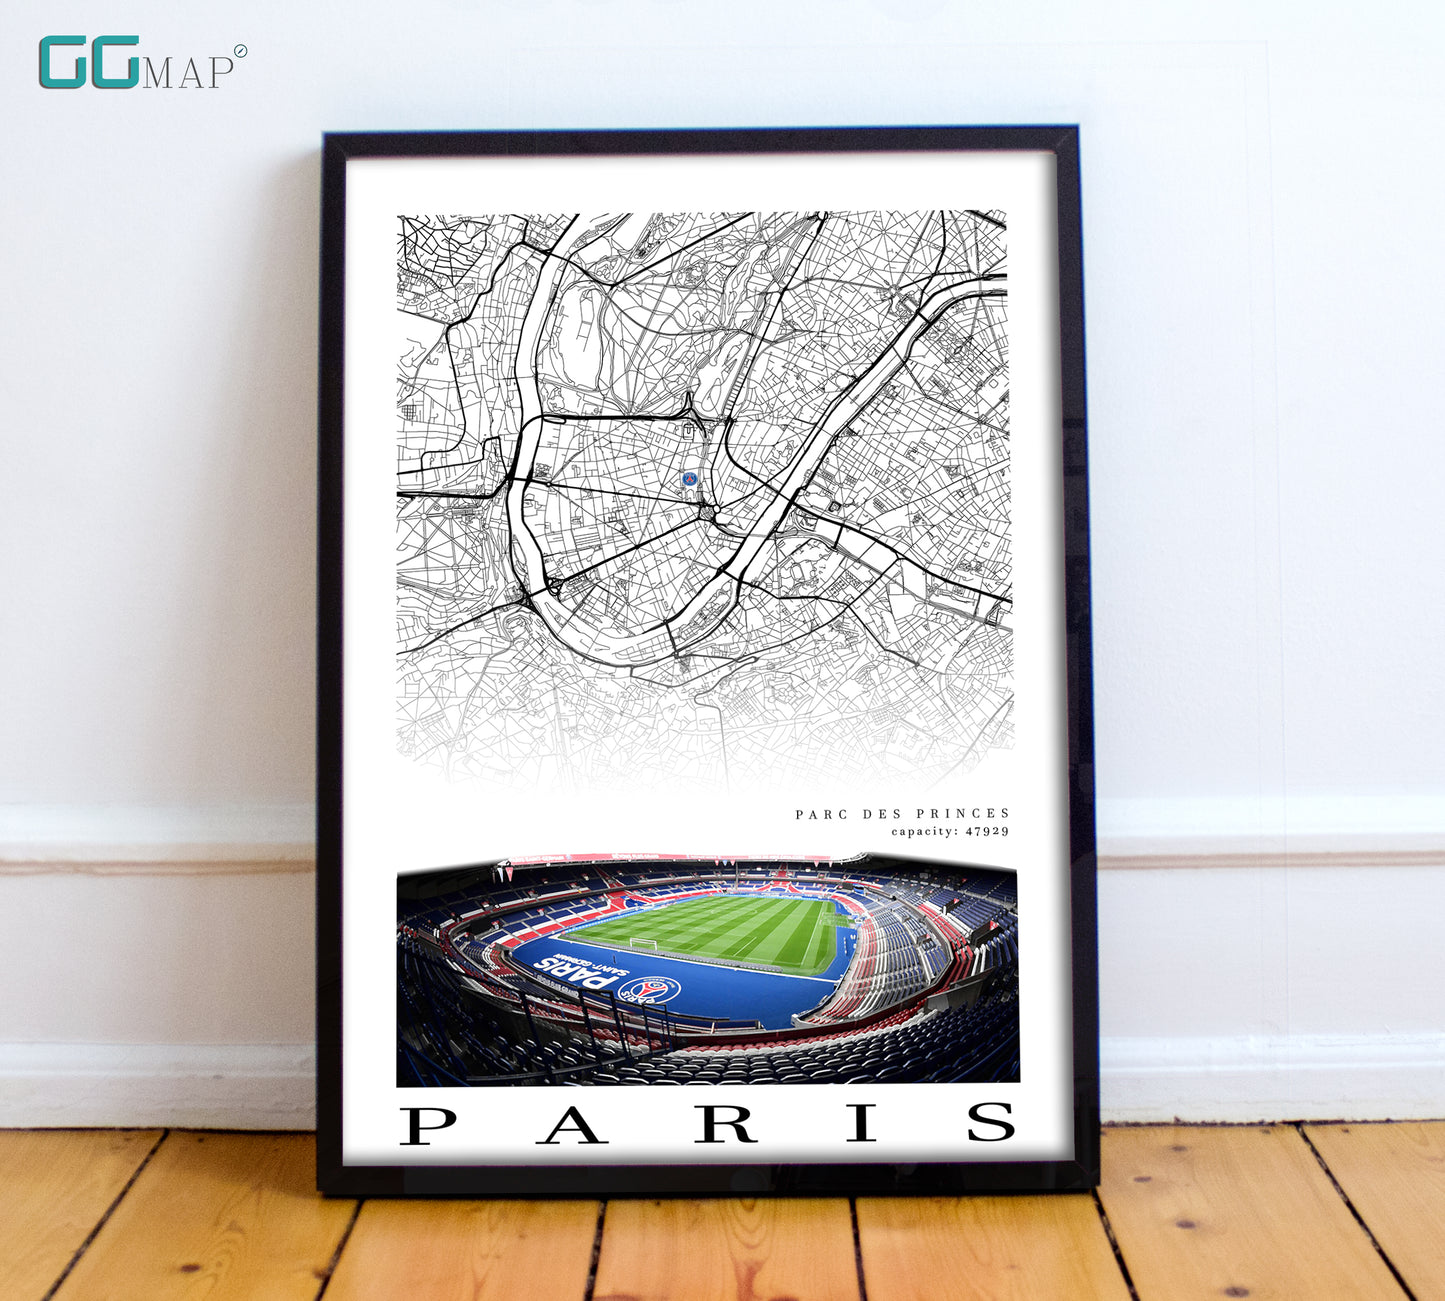 Map of Paris - Parc des princes - Paris Saint - Germain FC